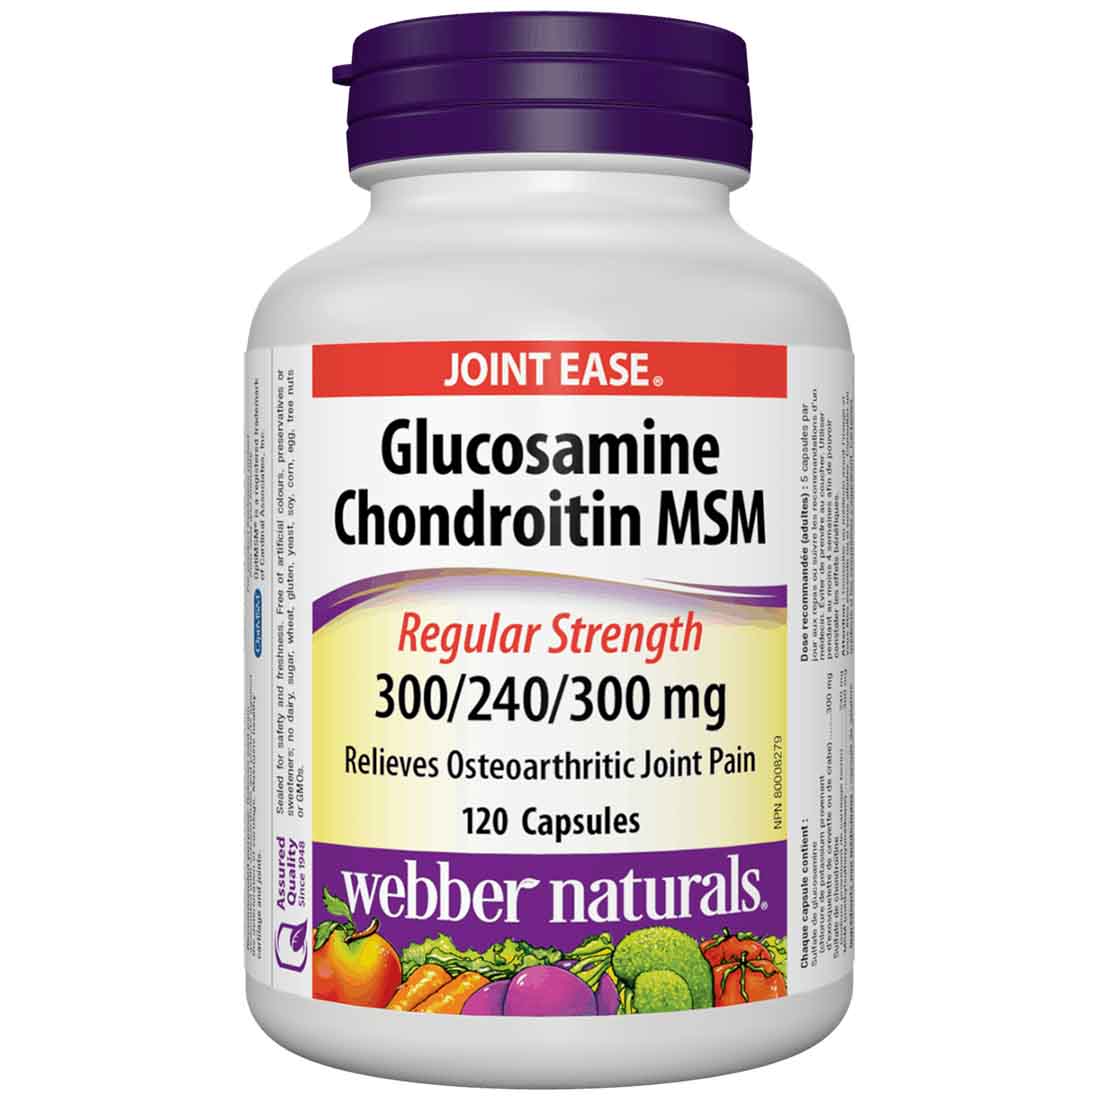 Webber Naturals Glucosamine Chondroitin MSM, 300mg/240mg/300mg, 120 Capsules